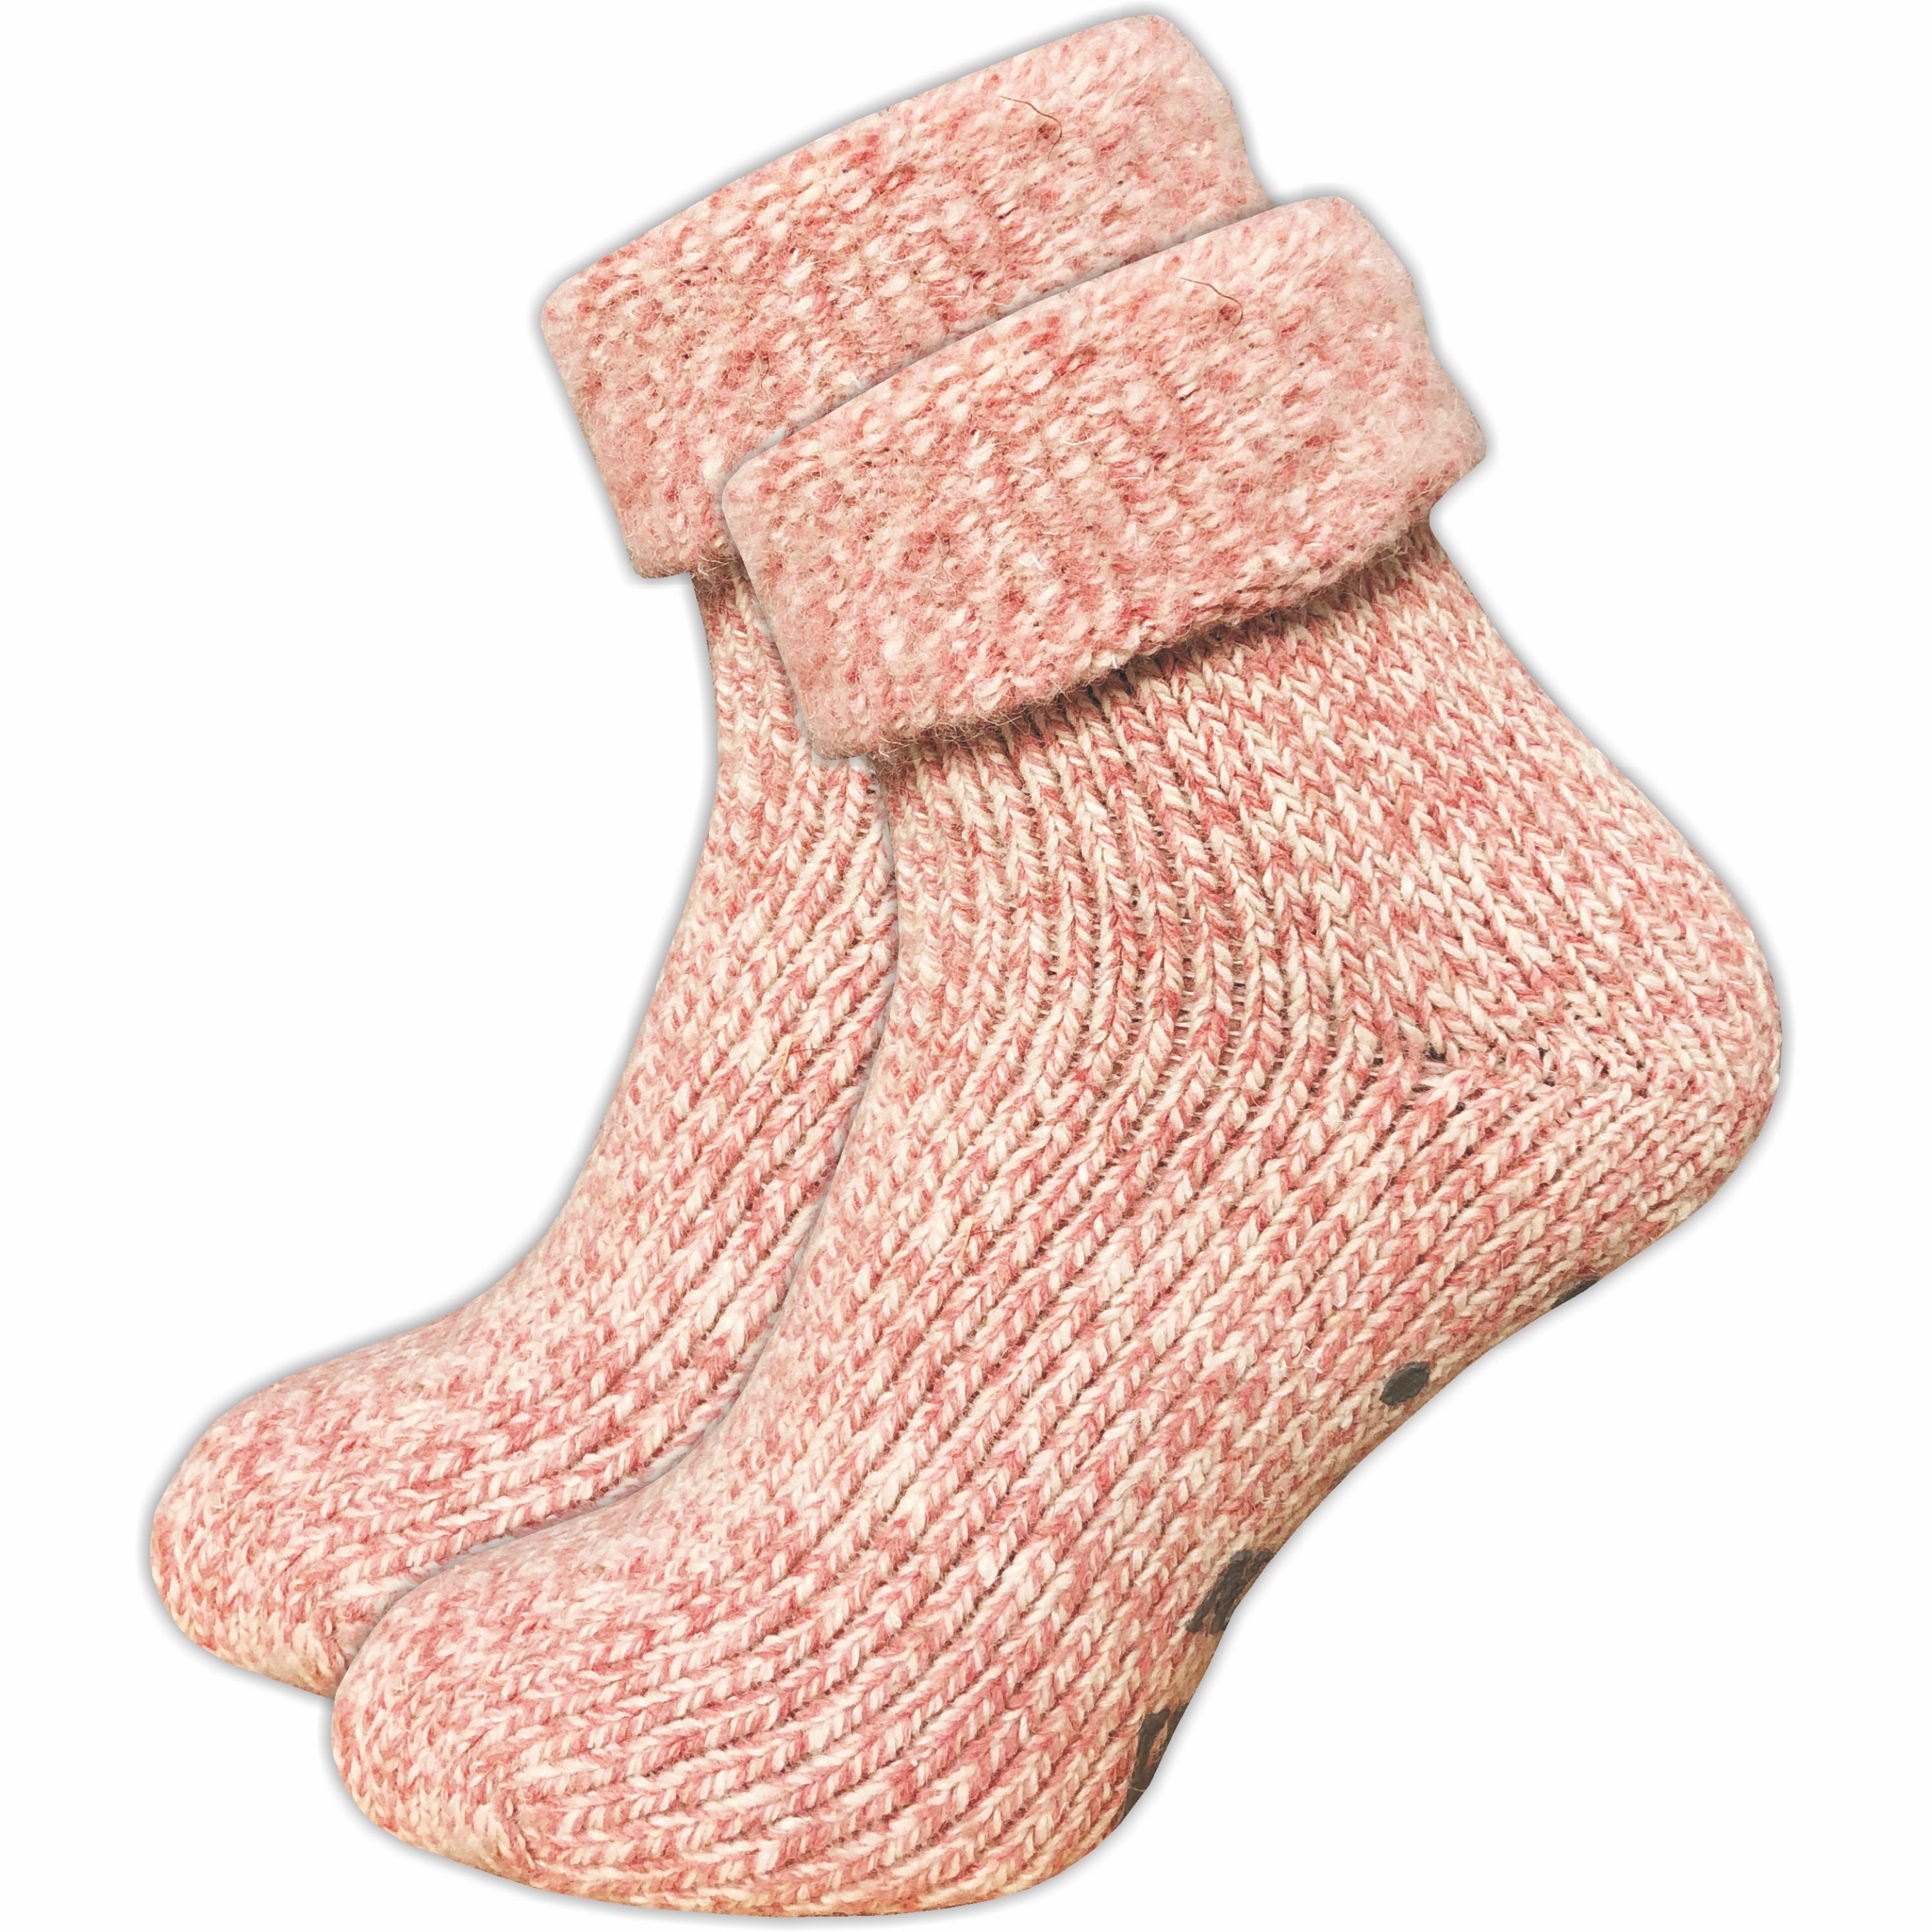 GAWILO ABS-Socken für Damen - Rutschfeste Hausschuhsocken - extra weich & mit Noppen (1 Paar) kuschelige & warme Wolle hilft gegen kalte Füße rosa